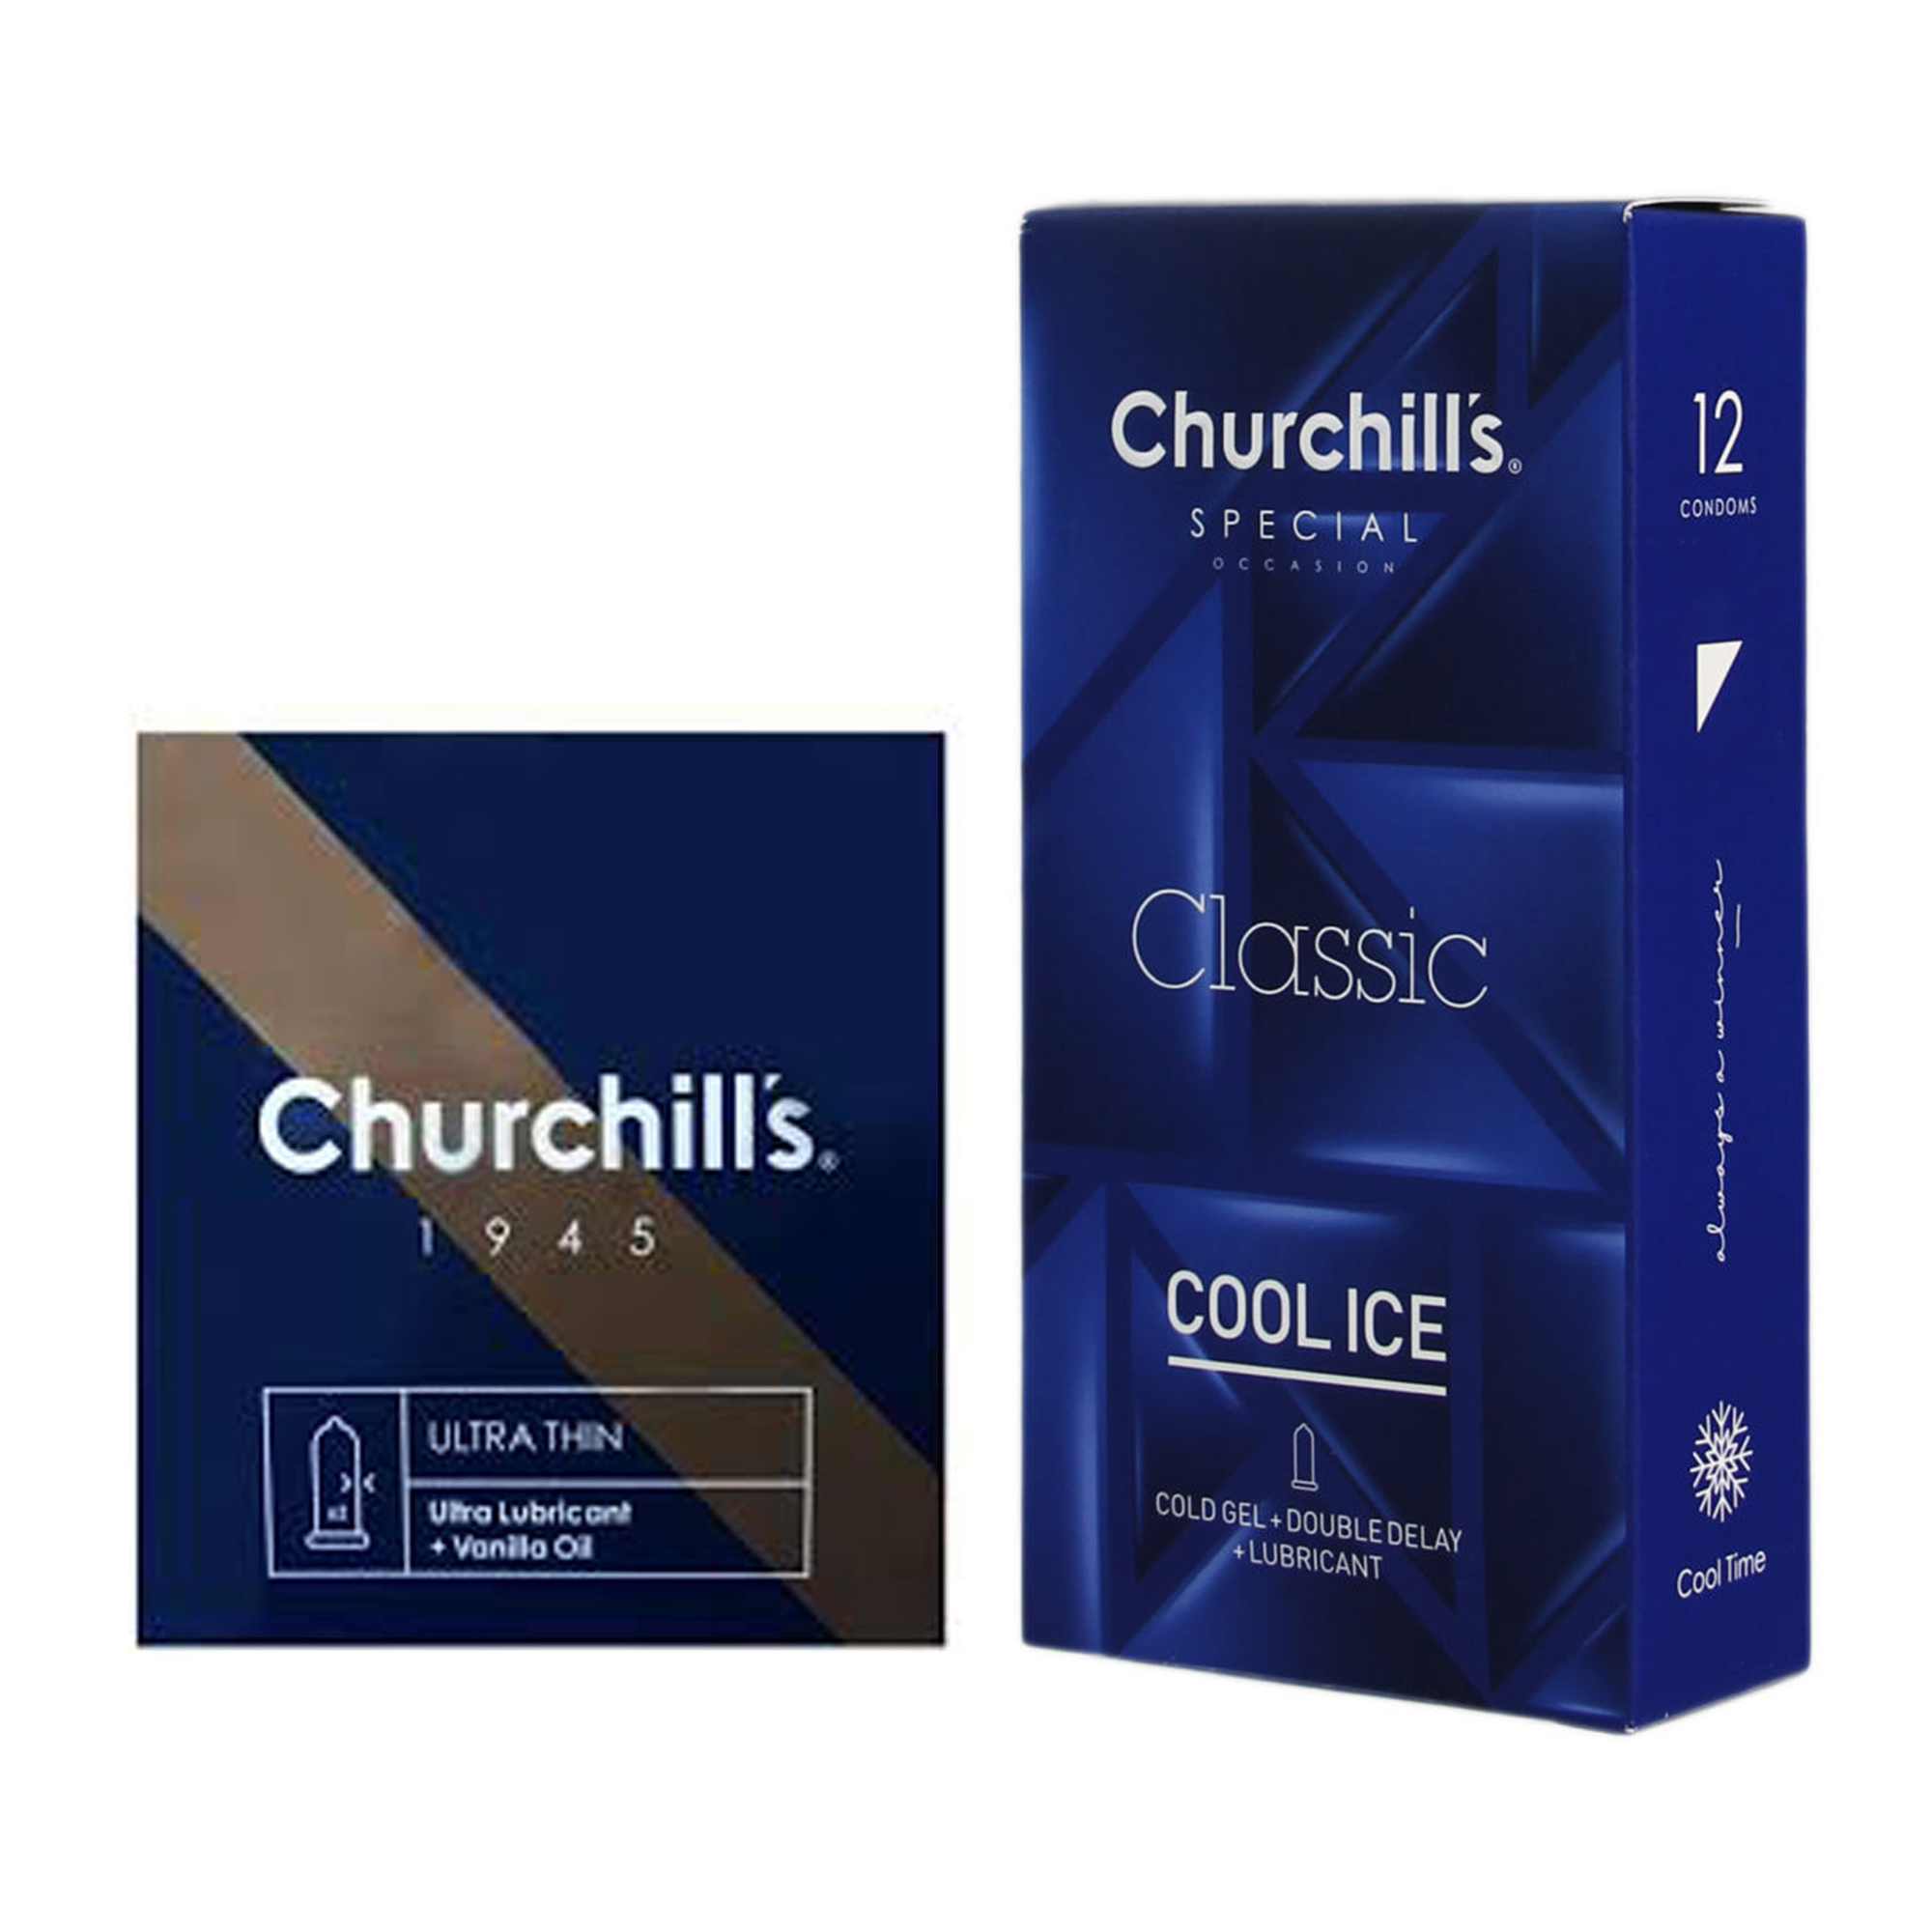 کاندوم چرچیلز مدل Cool Ice بسته 12 عددی به همراه کاندوم چرچیلز مدل Ultra Lubricant بسته 3 عددی